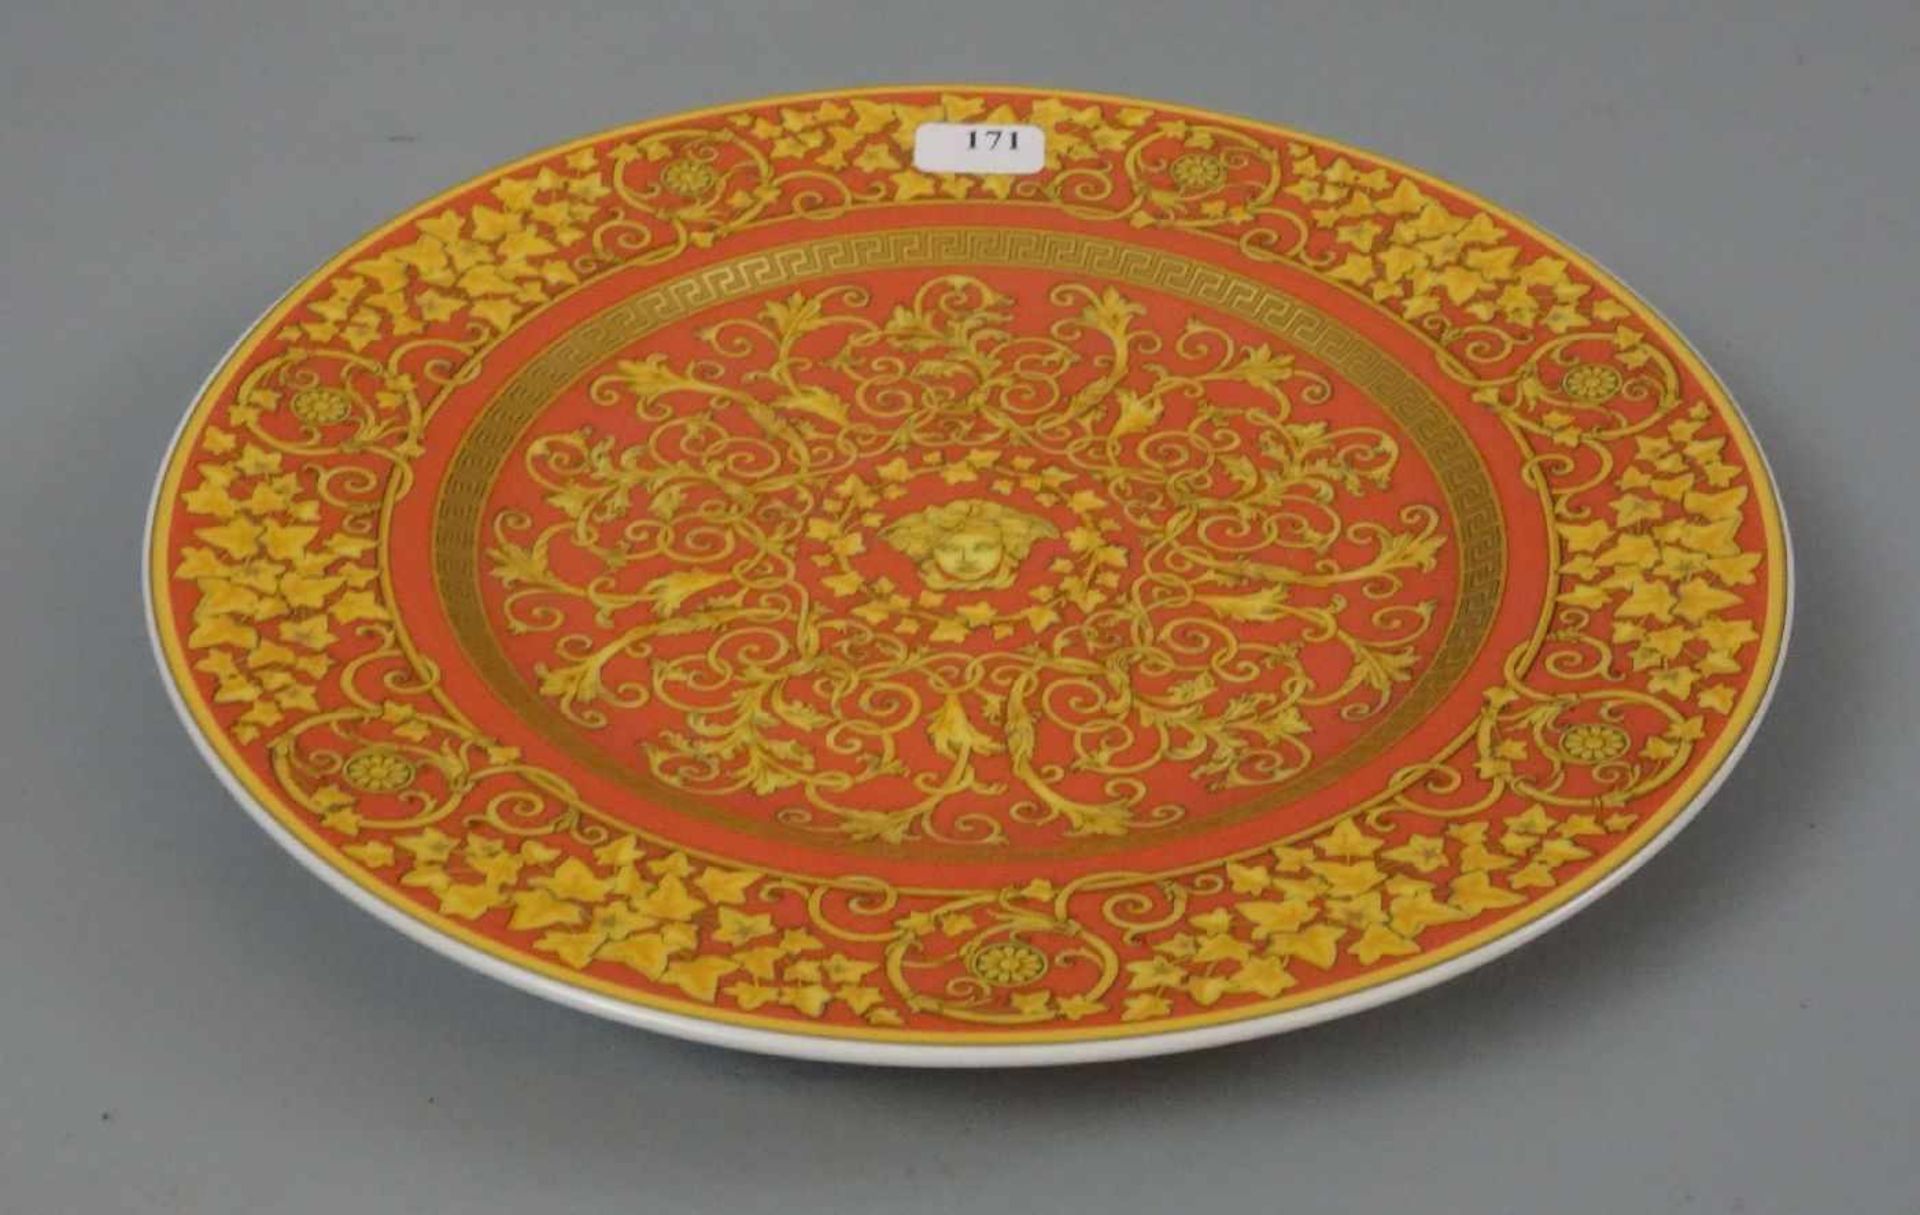 VERSACE - TELLER / plate, Porzellan, Manufaktur Rosenthal, Dekor "Floralia Medusa Red" mit - Bild 2 aus 3